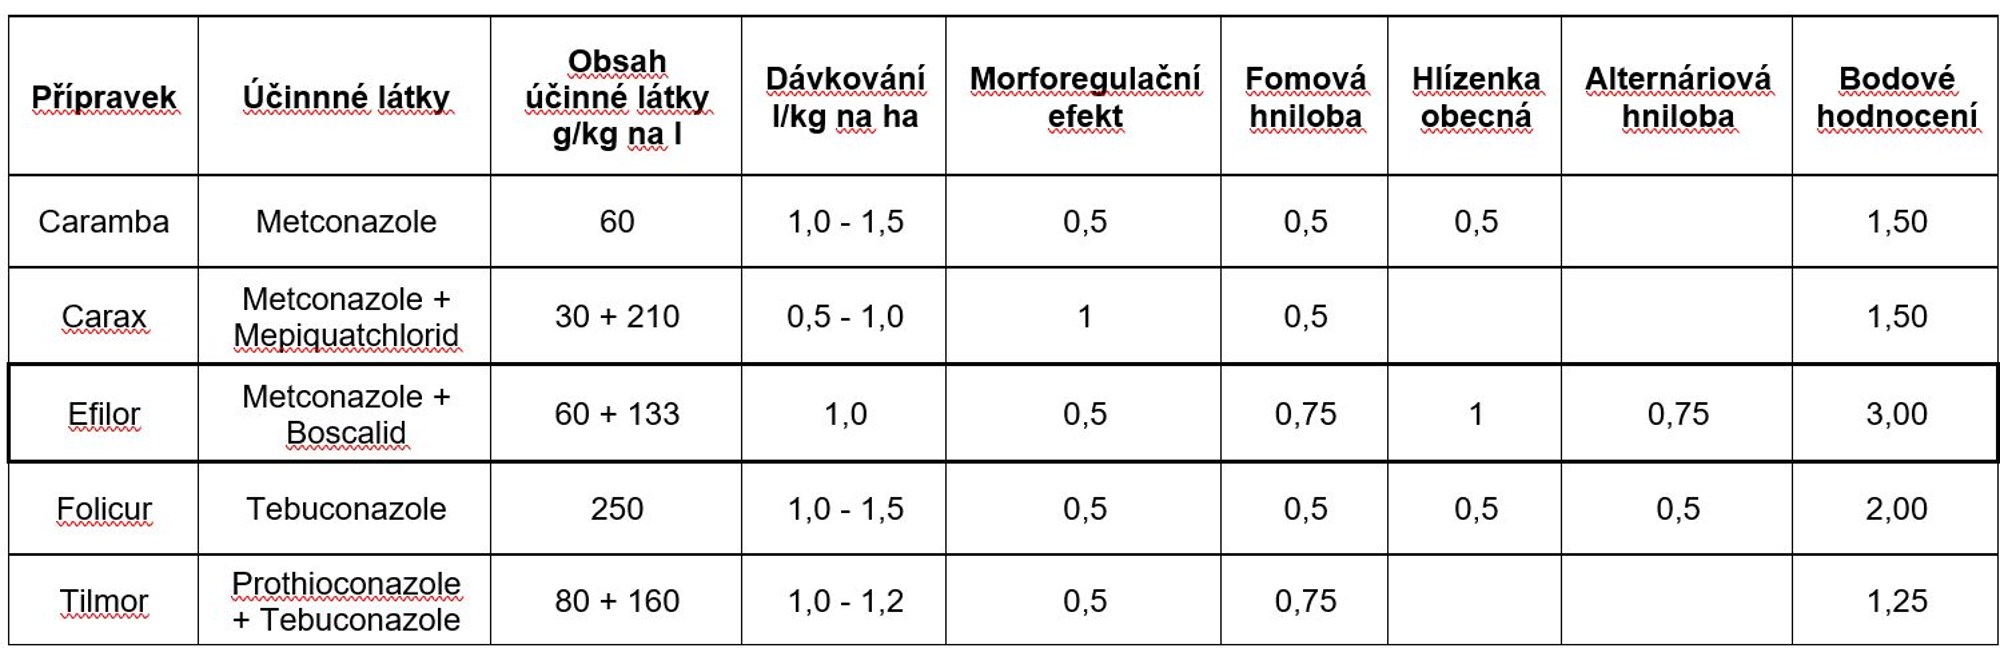 tabulka s výsledky fungicidních testů Německého institutu pro ochranu rostlin